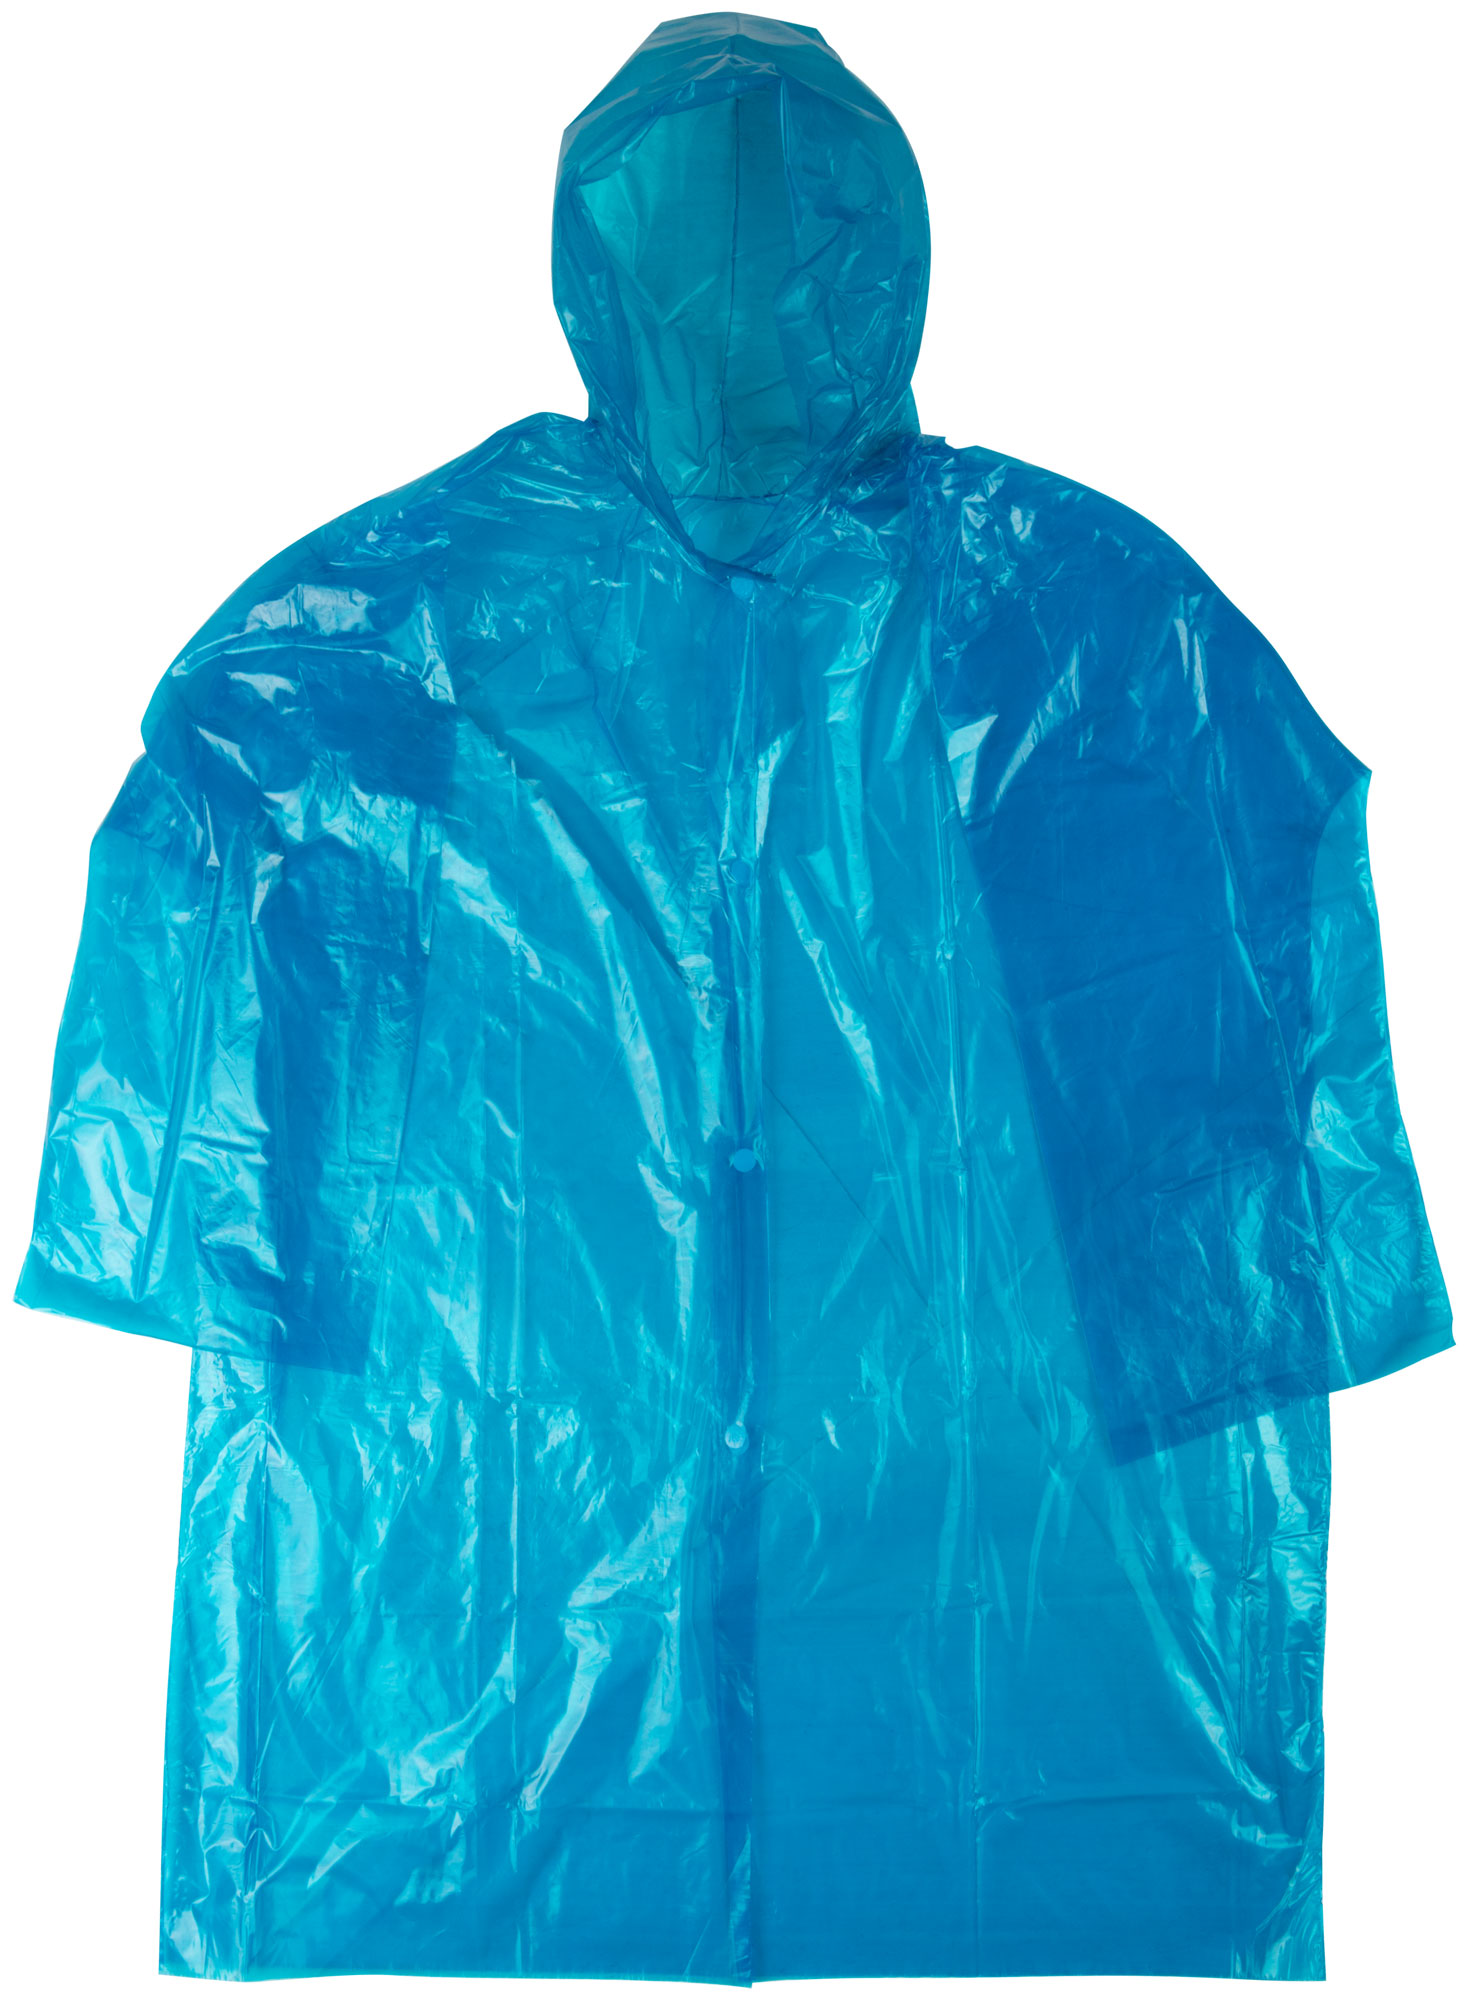 Плащ дождевик MOS усиленный синий, полиэтилен, размер XXXL 12155М - фото 1